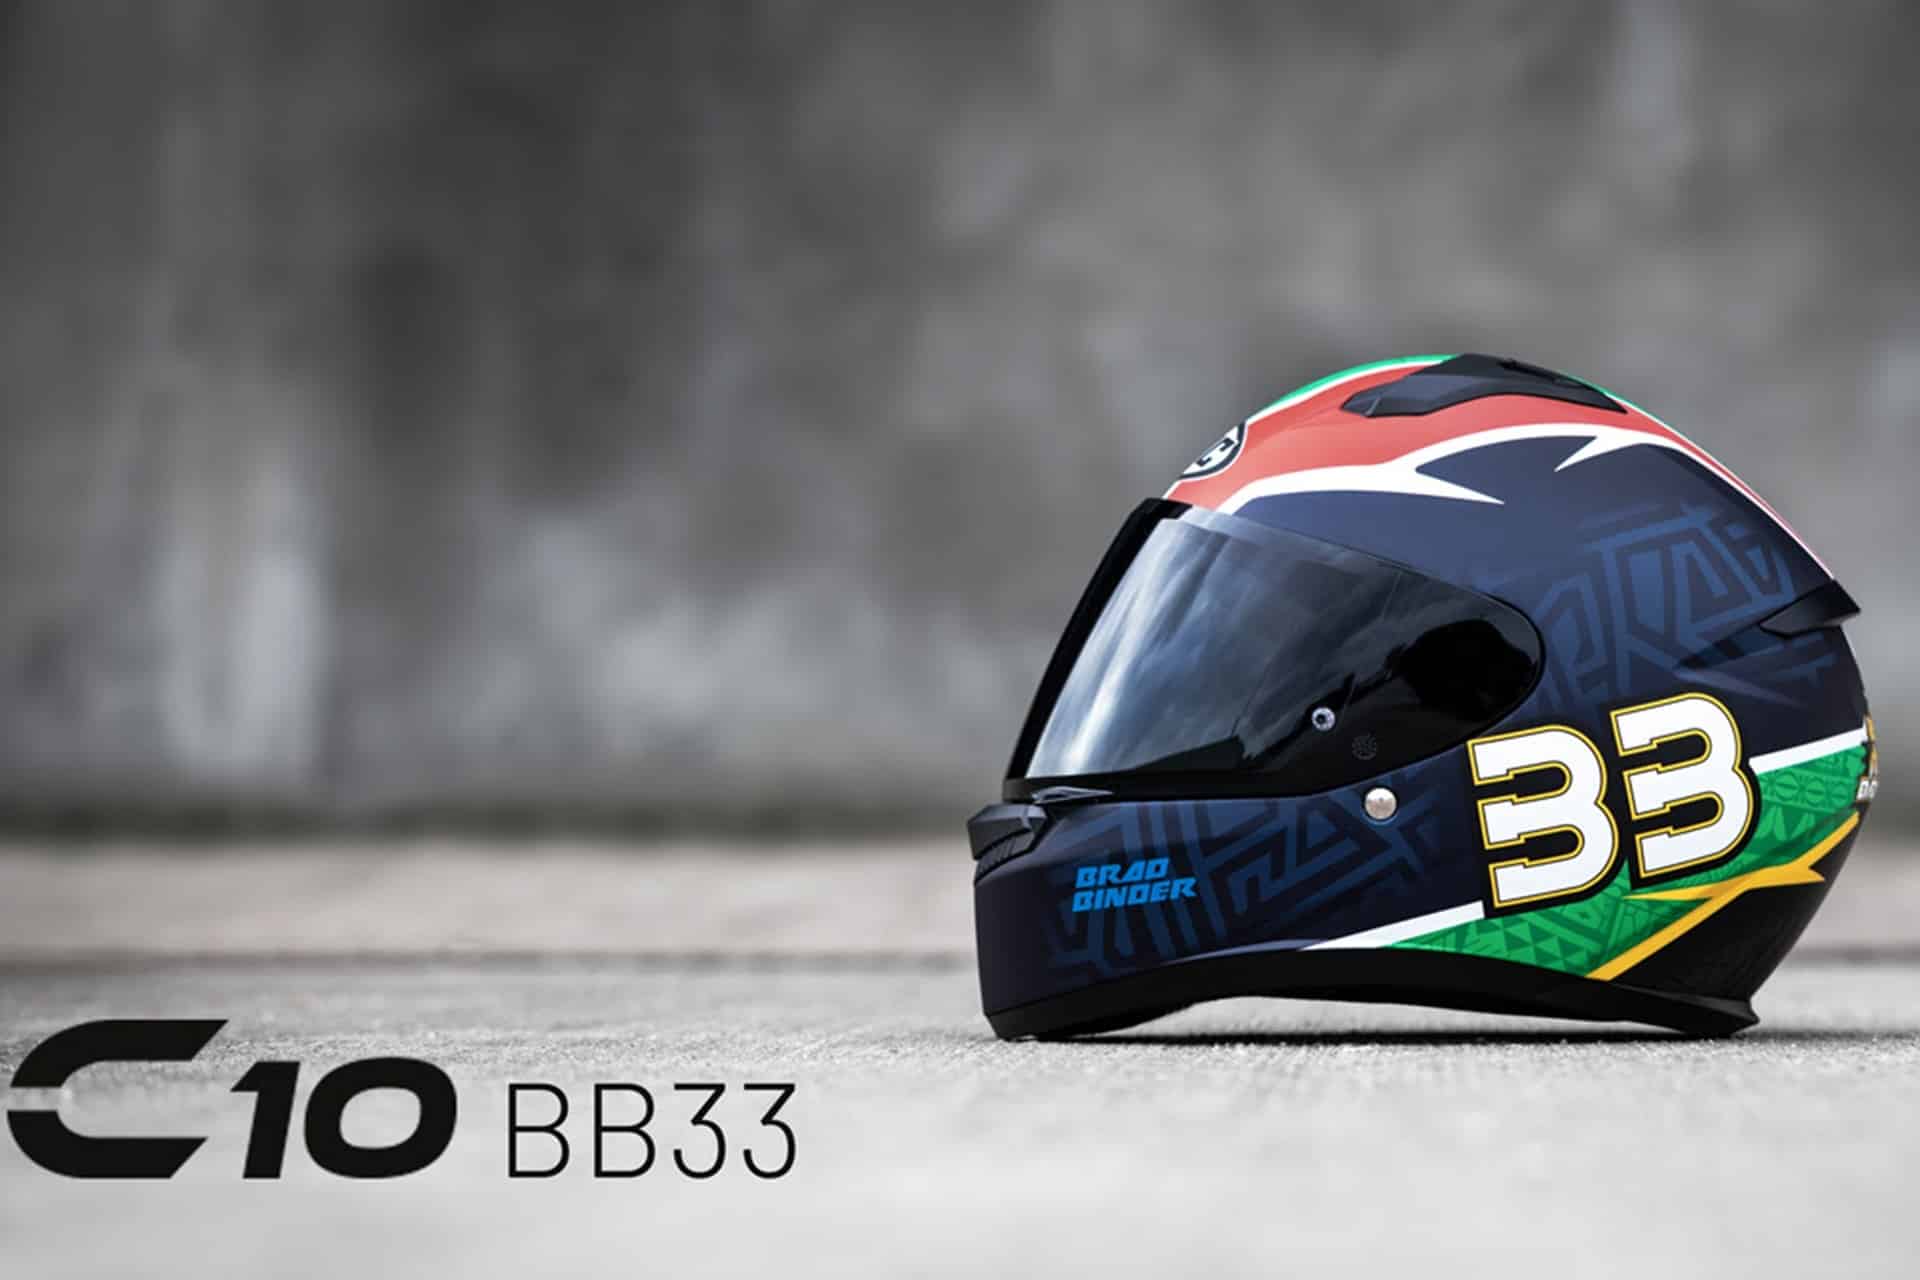 HJC Helmets estrena su nueva gráfica Brad Binder 33 dentro de su conocida gama C10